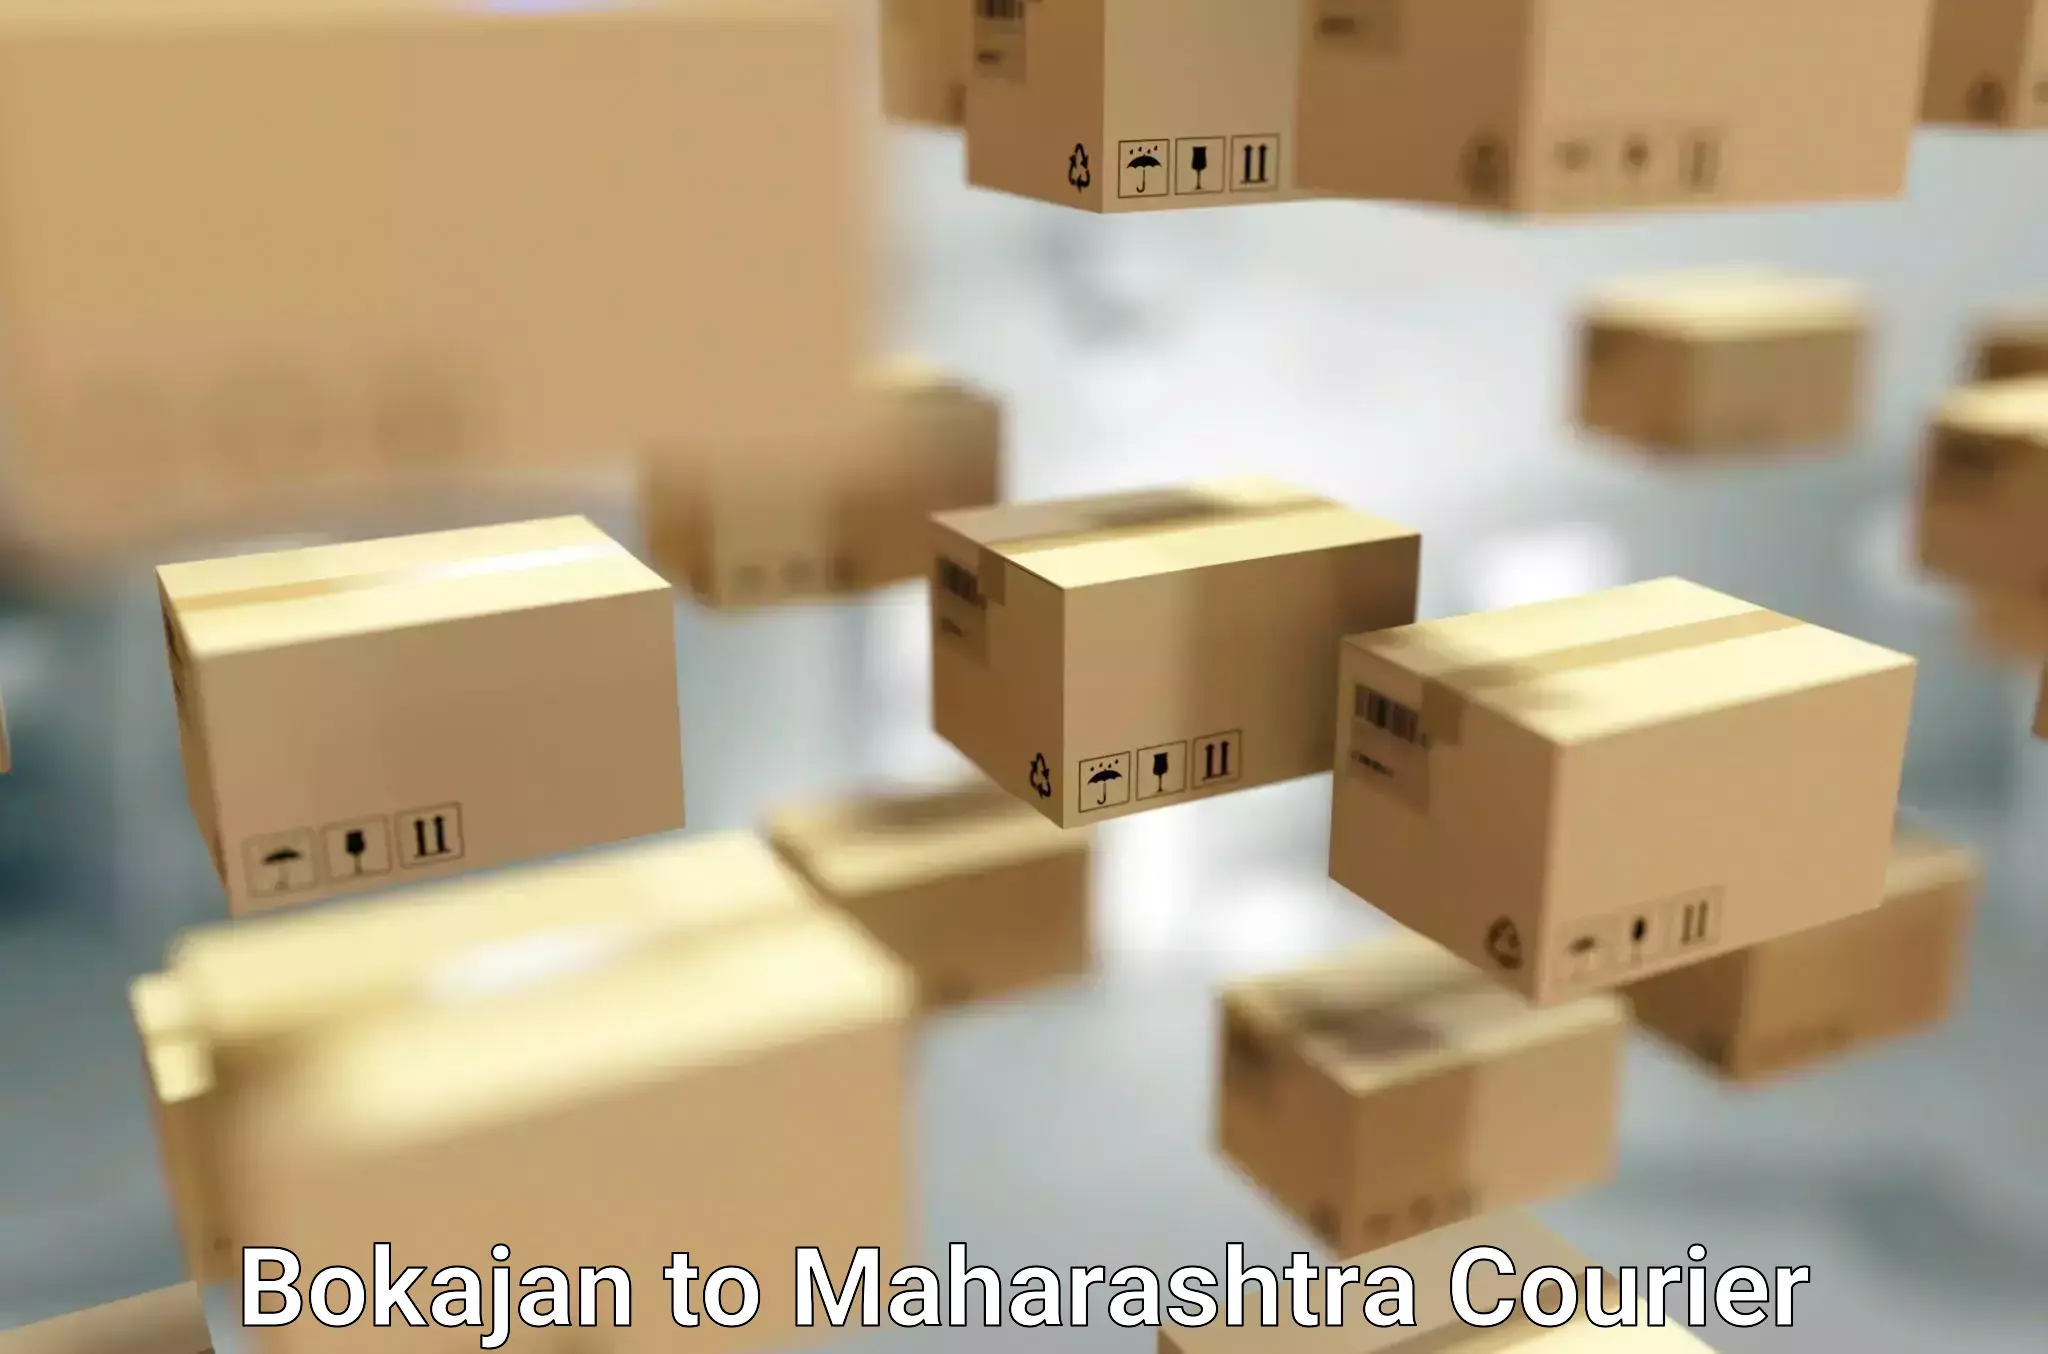 Professional relocation services Bokajan to Maharashtra